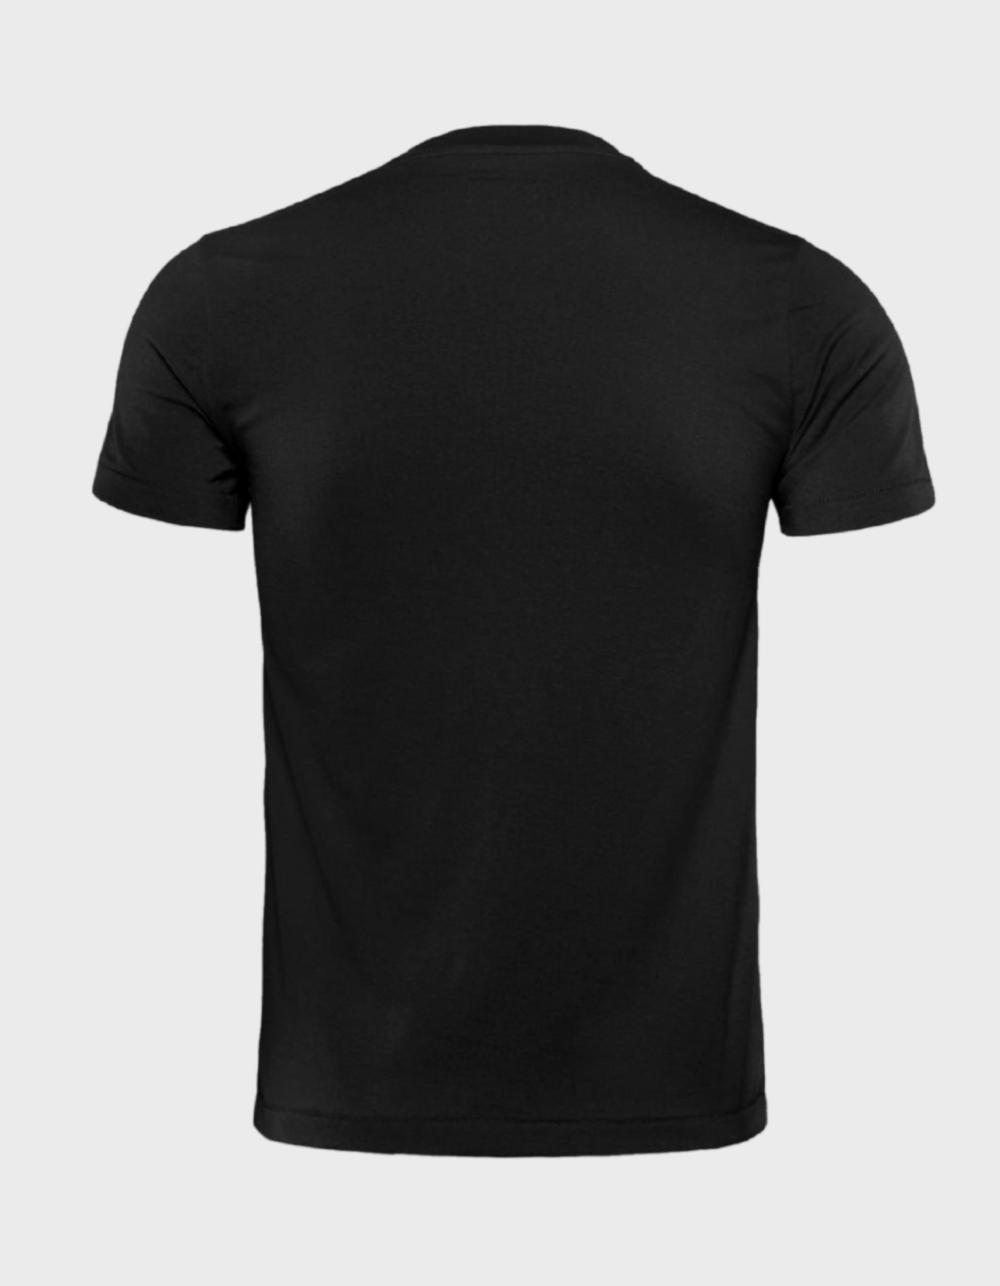 Berserk - Guts Death Stare High-Quality T-Shirt